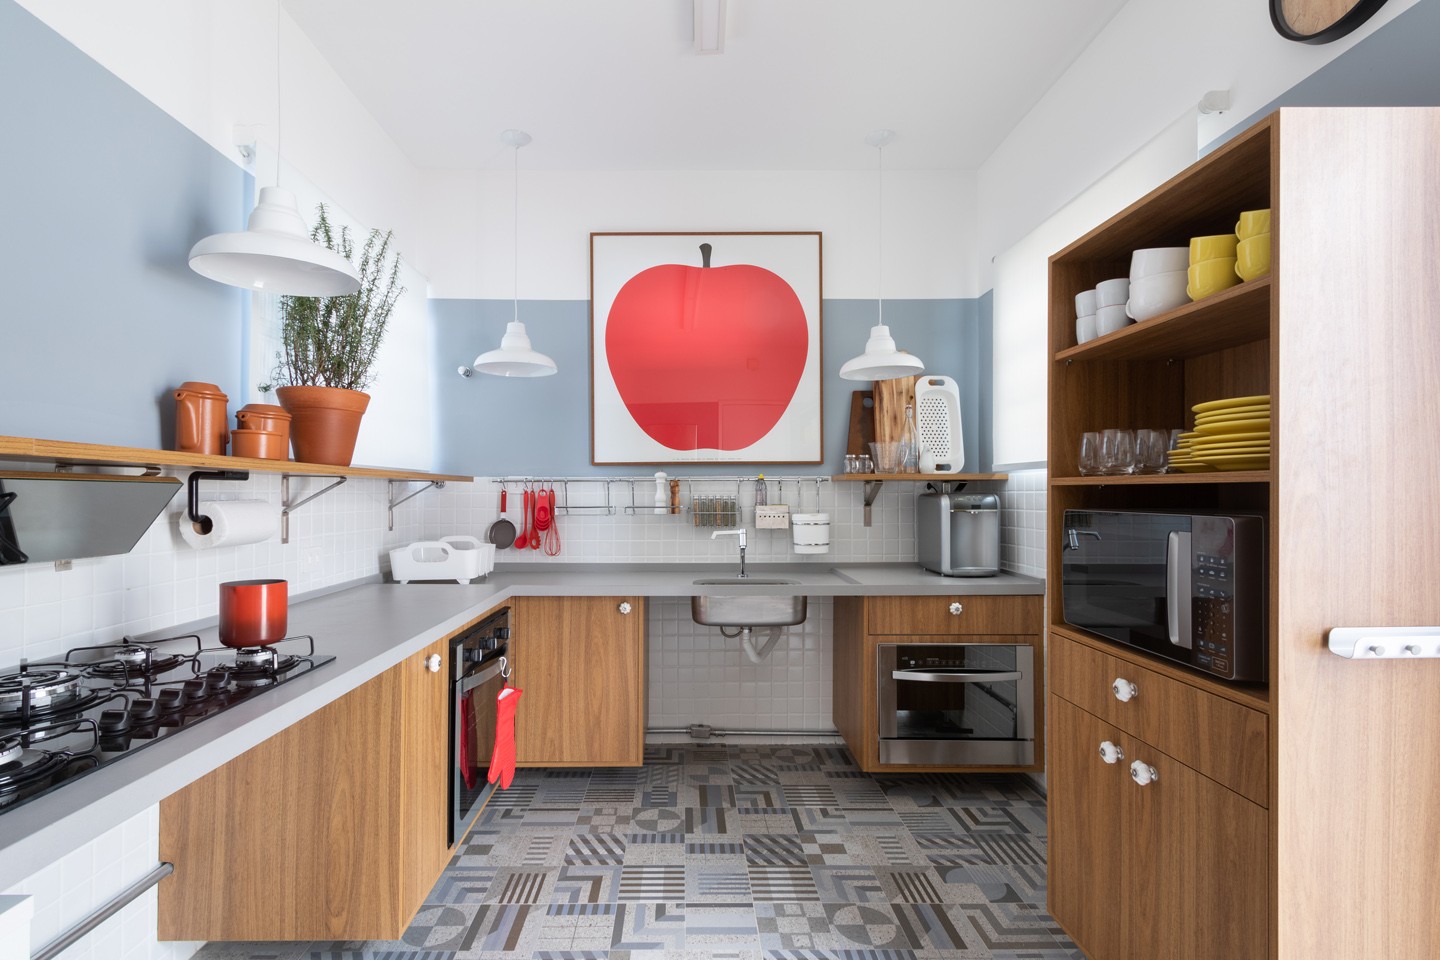 Décor do dia: cozinha acessível tem tons azulados e madeira (Foto: Alexandre Disaro/Divulgação)